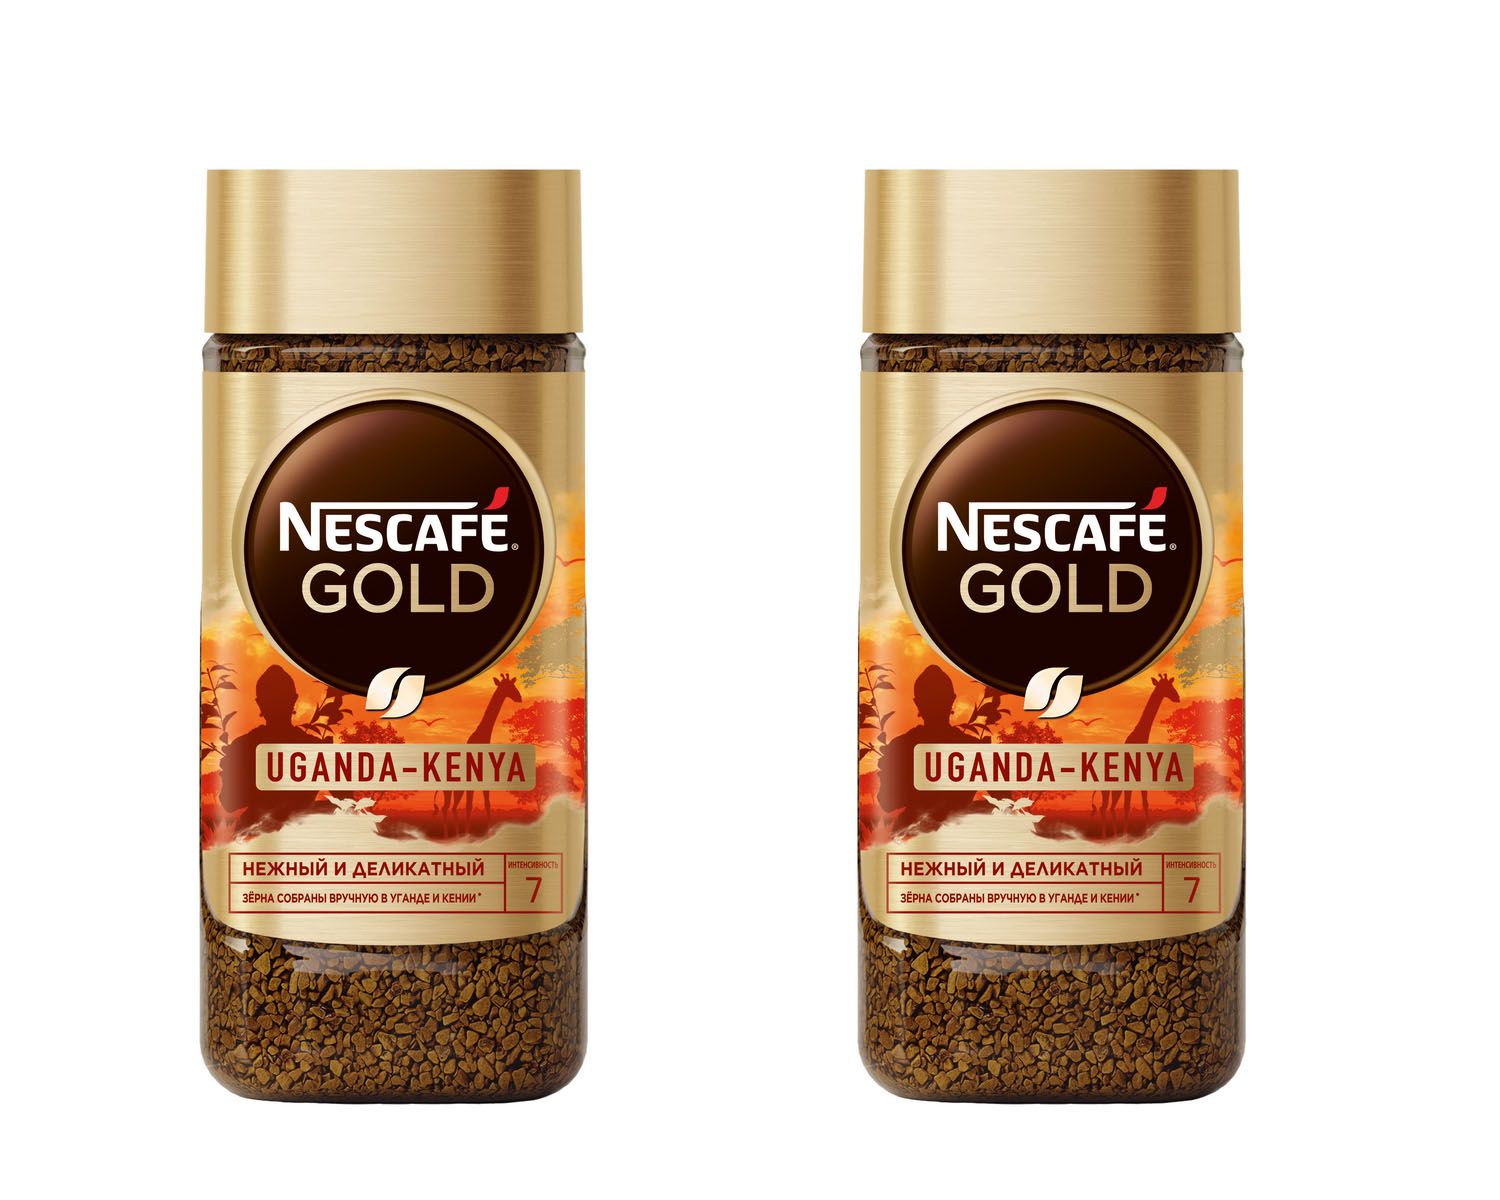 Кофе растворимый лучший по качеству. Nescafe Gold Origins кофе крепкий и изысканный alta Rica 85г. Кофе Нескафе Голд 85г. Nescafe Gold 85 г. Кофе Нескафе Голд Суматра.